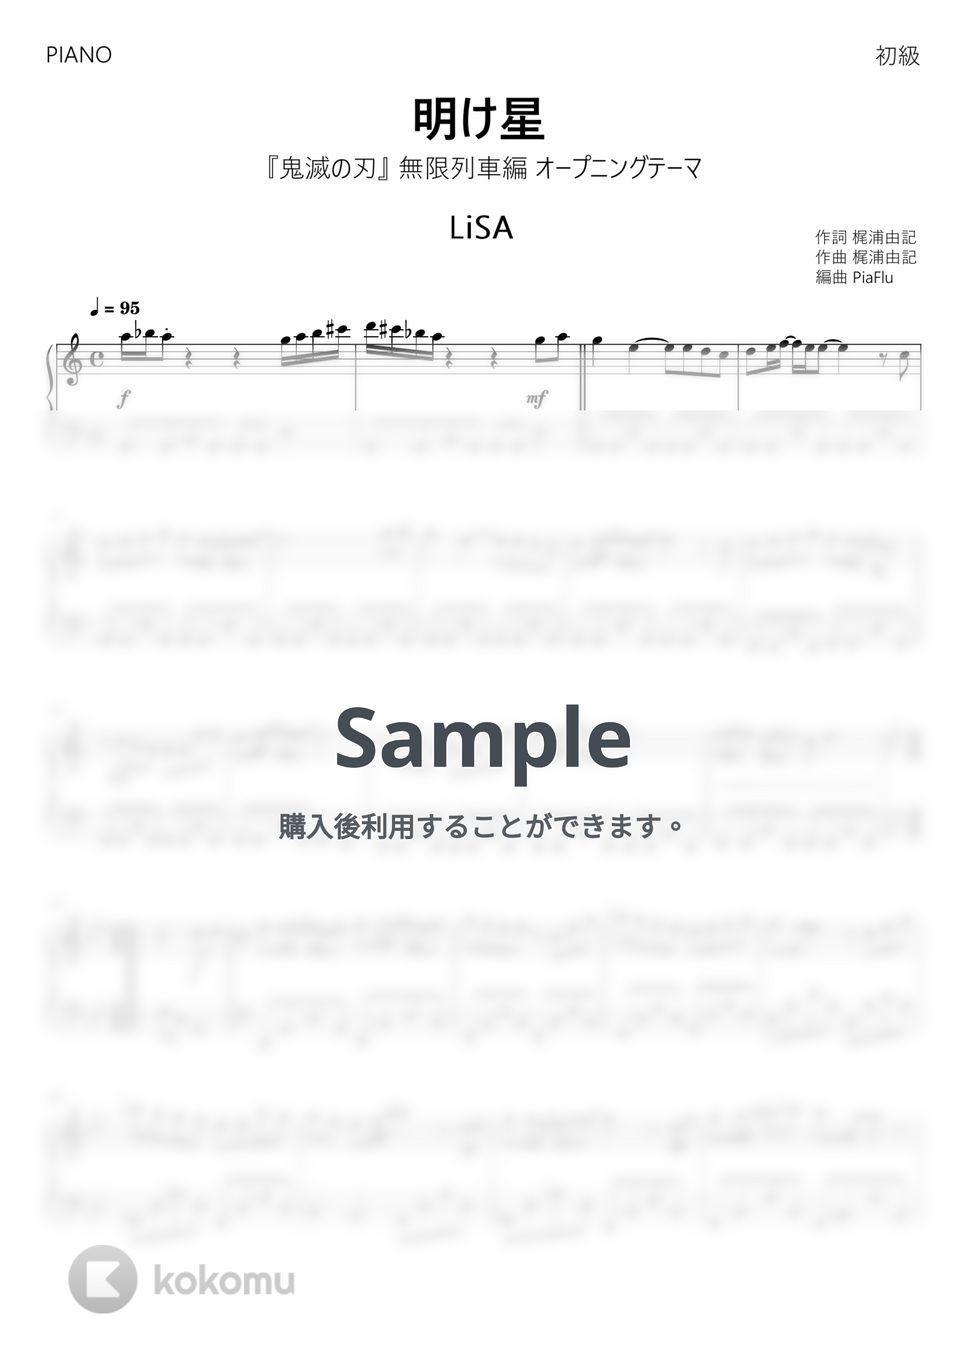 『鬼滅の刃』無限列車編 オープニングテーマ - 明け星 / LiSA (初級ピアノ) by PiaFlu